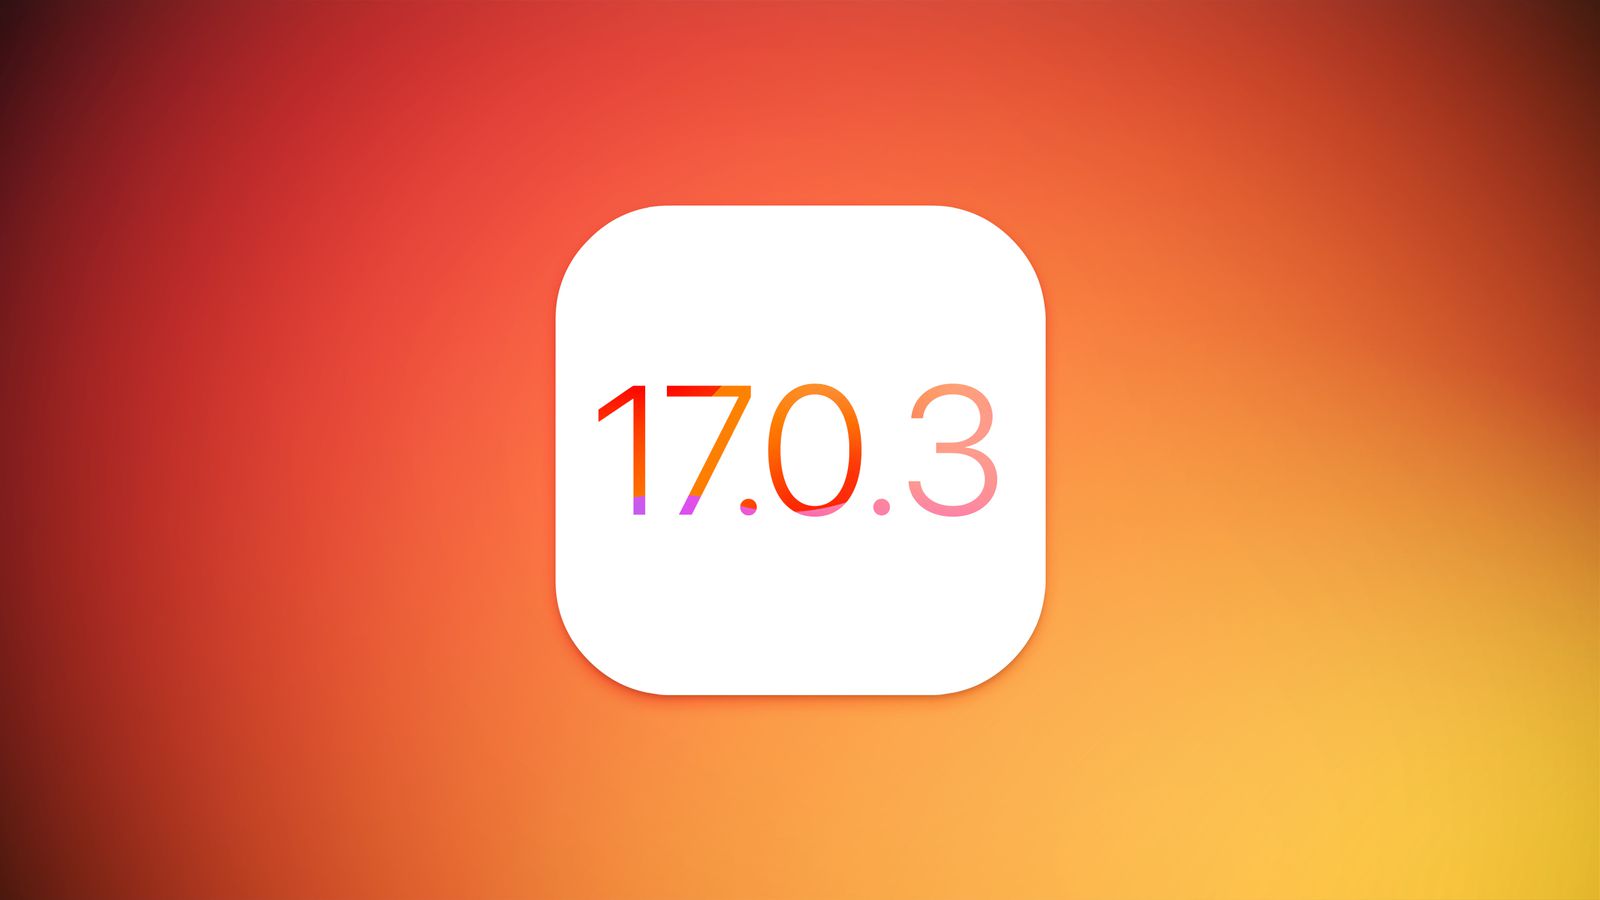 Apple con la actualización iOS 17.0.3 solucionó el problema de sobrecalentamiento del iPhone 15 Pro y iPhone 15 Pro Max